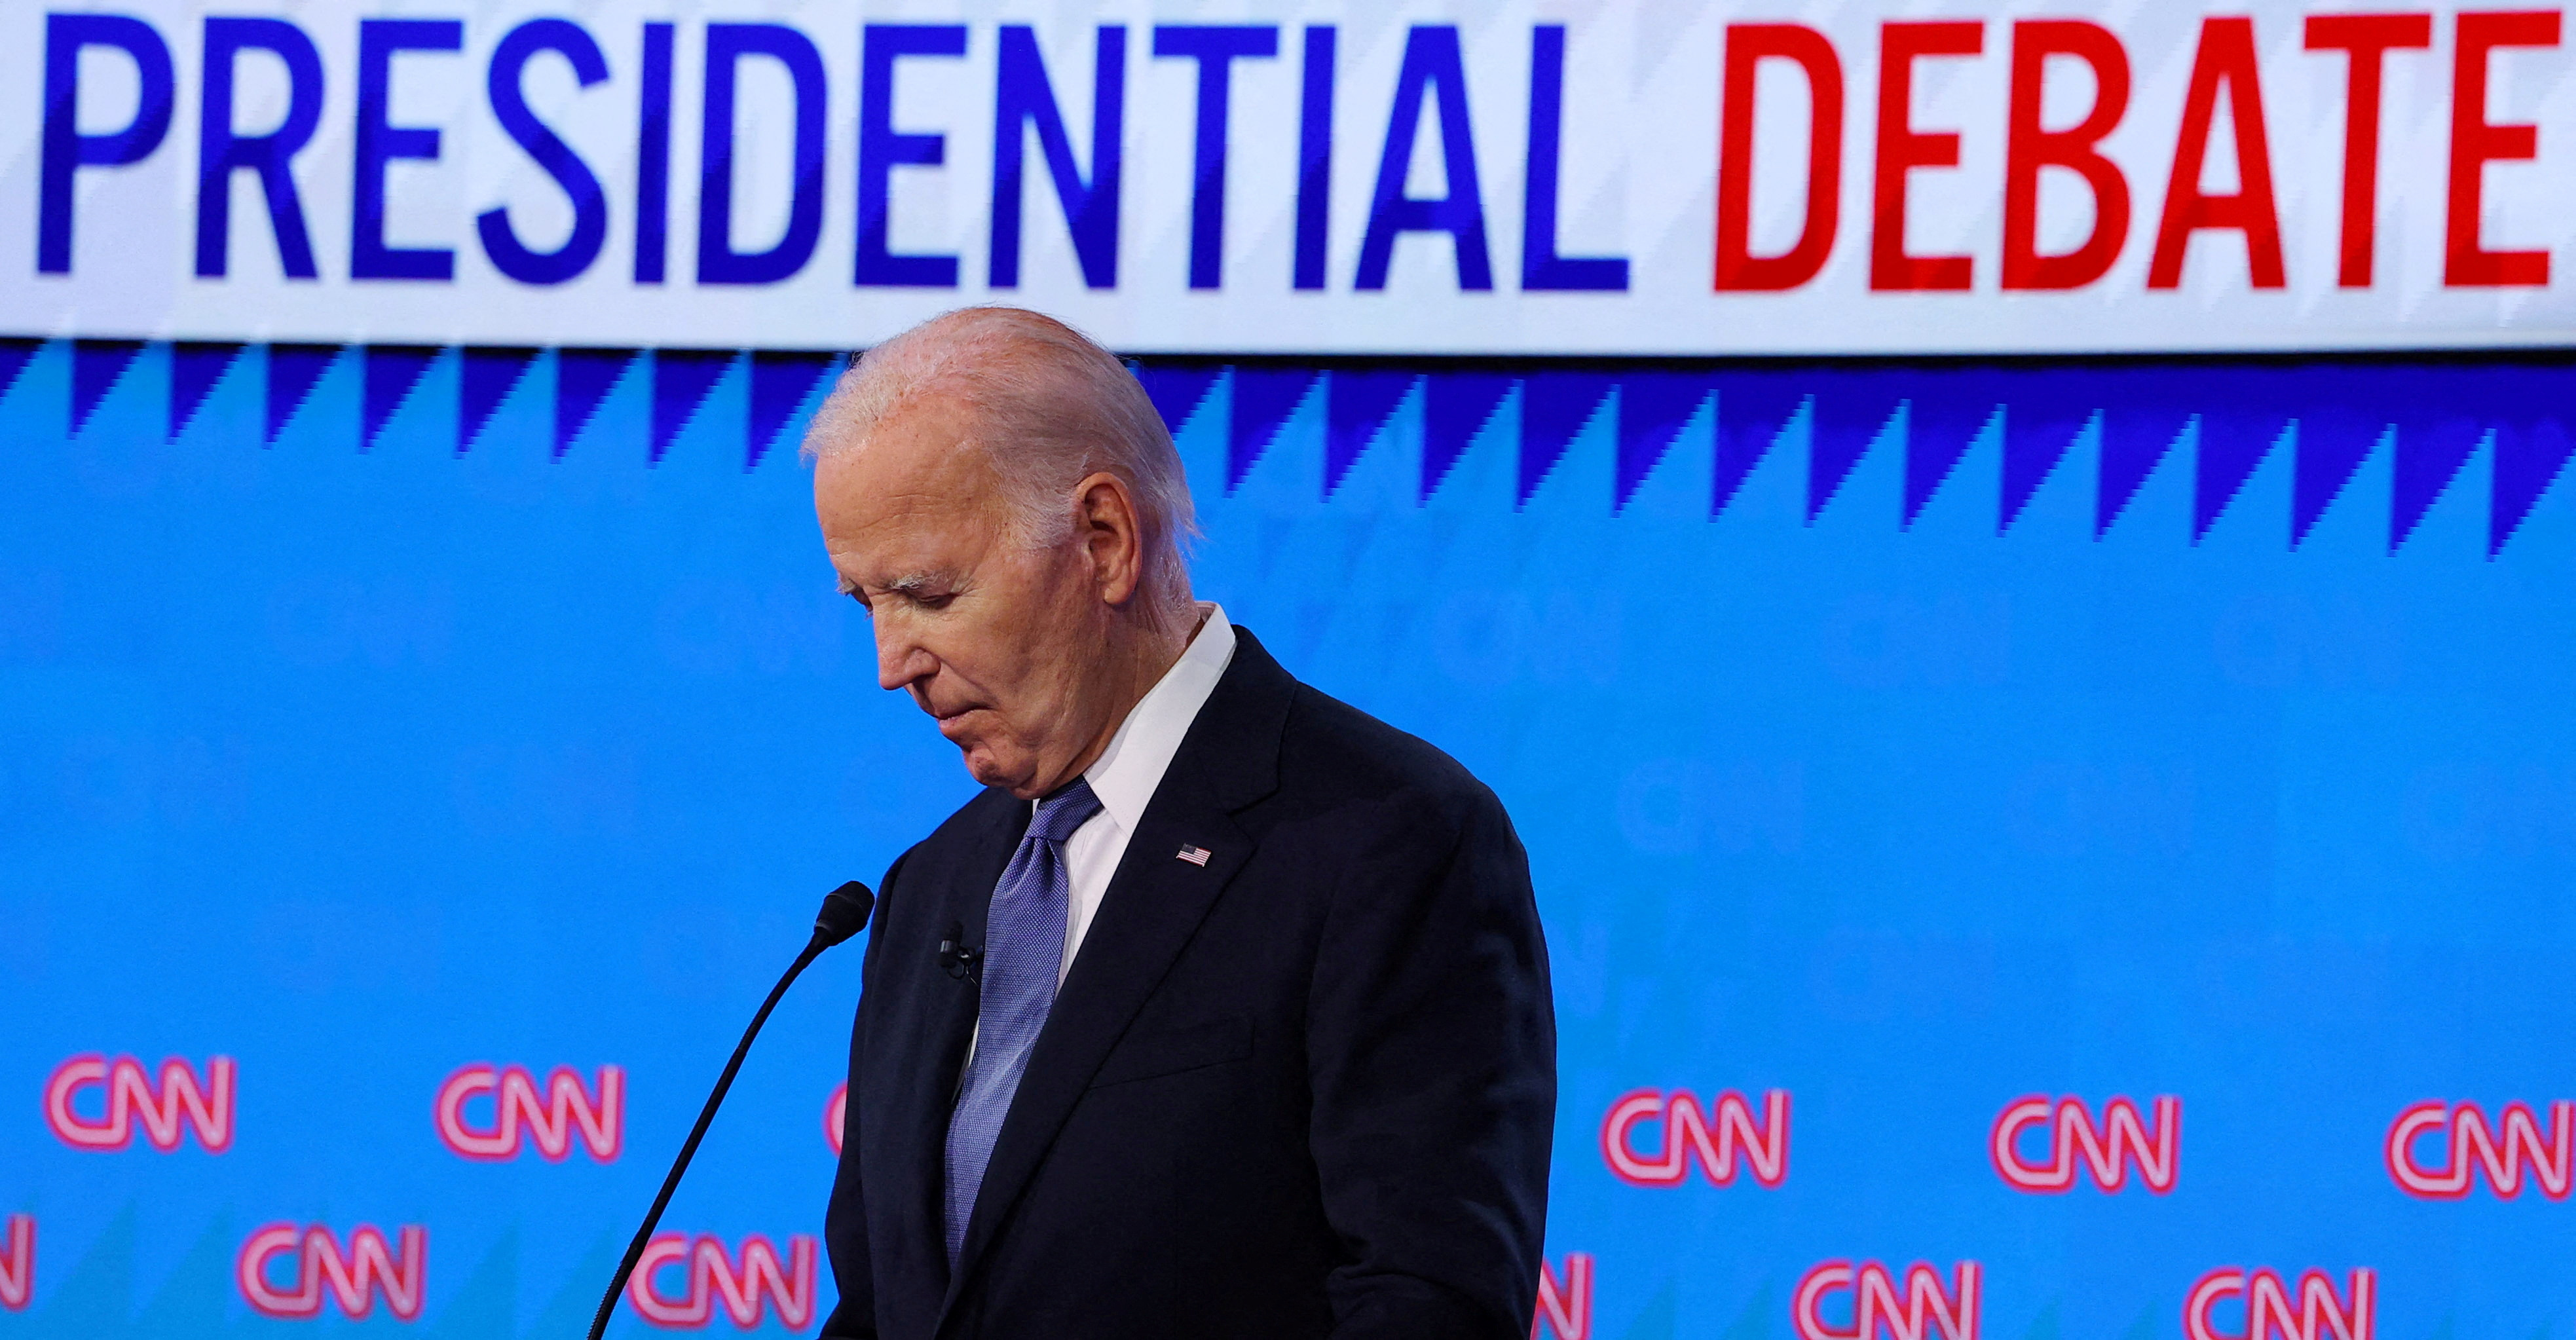 President Joe Biden listens as Republican candidate Donald Trump speaks during their debate in...